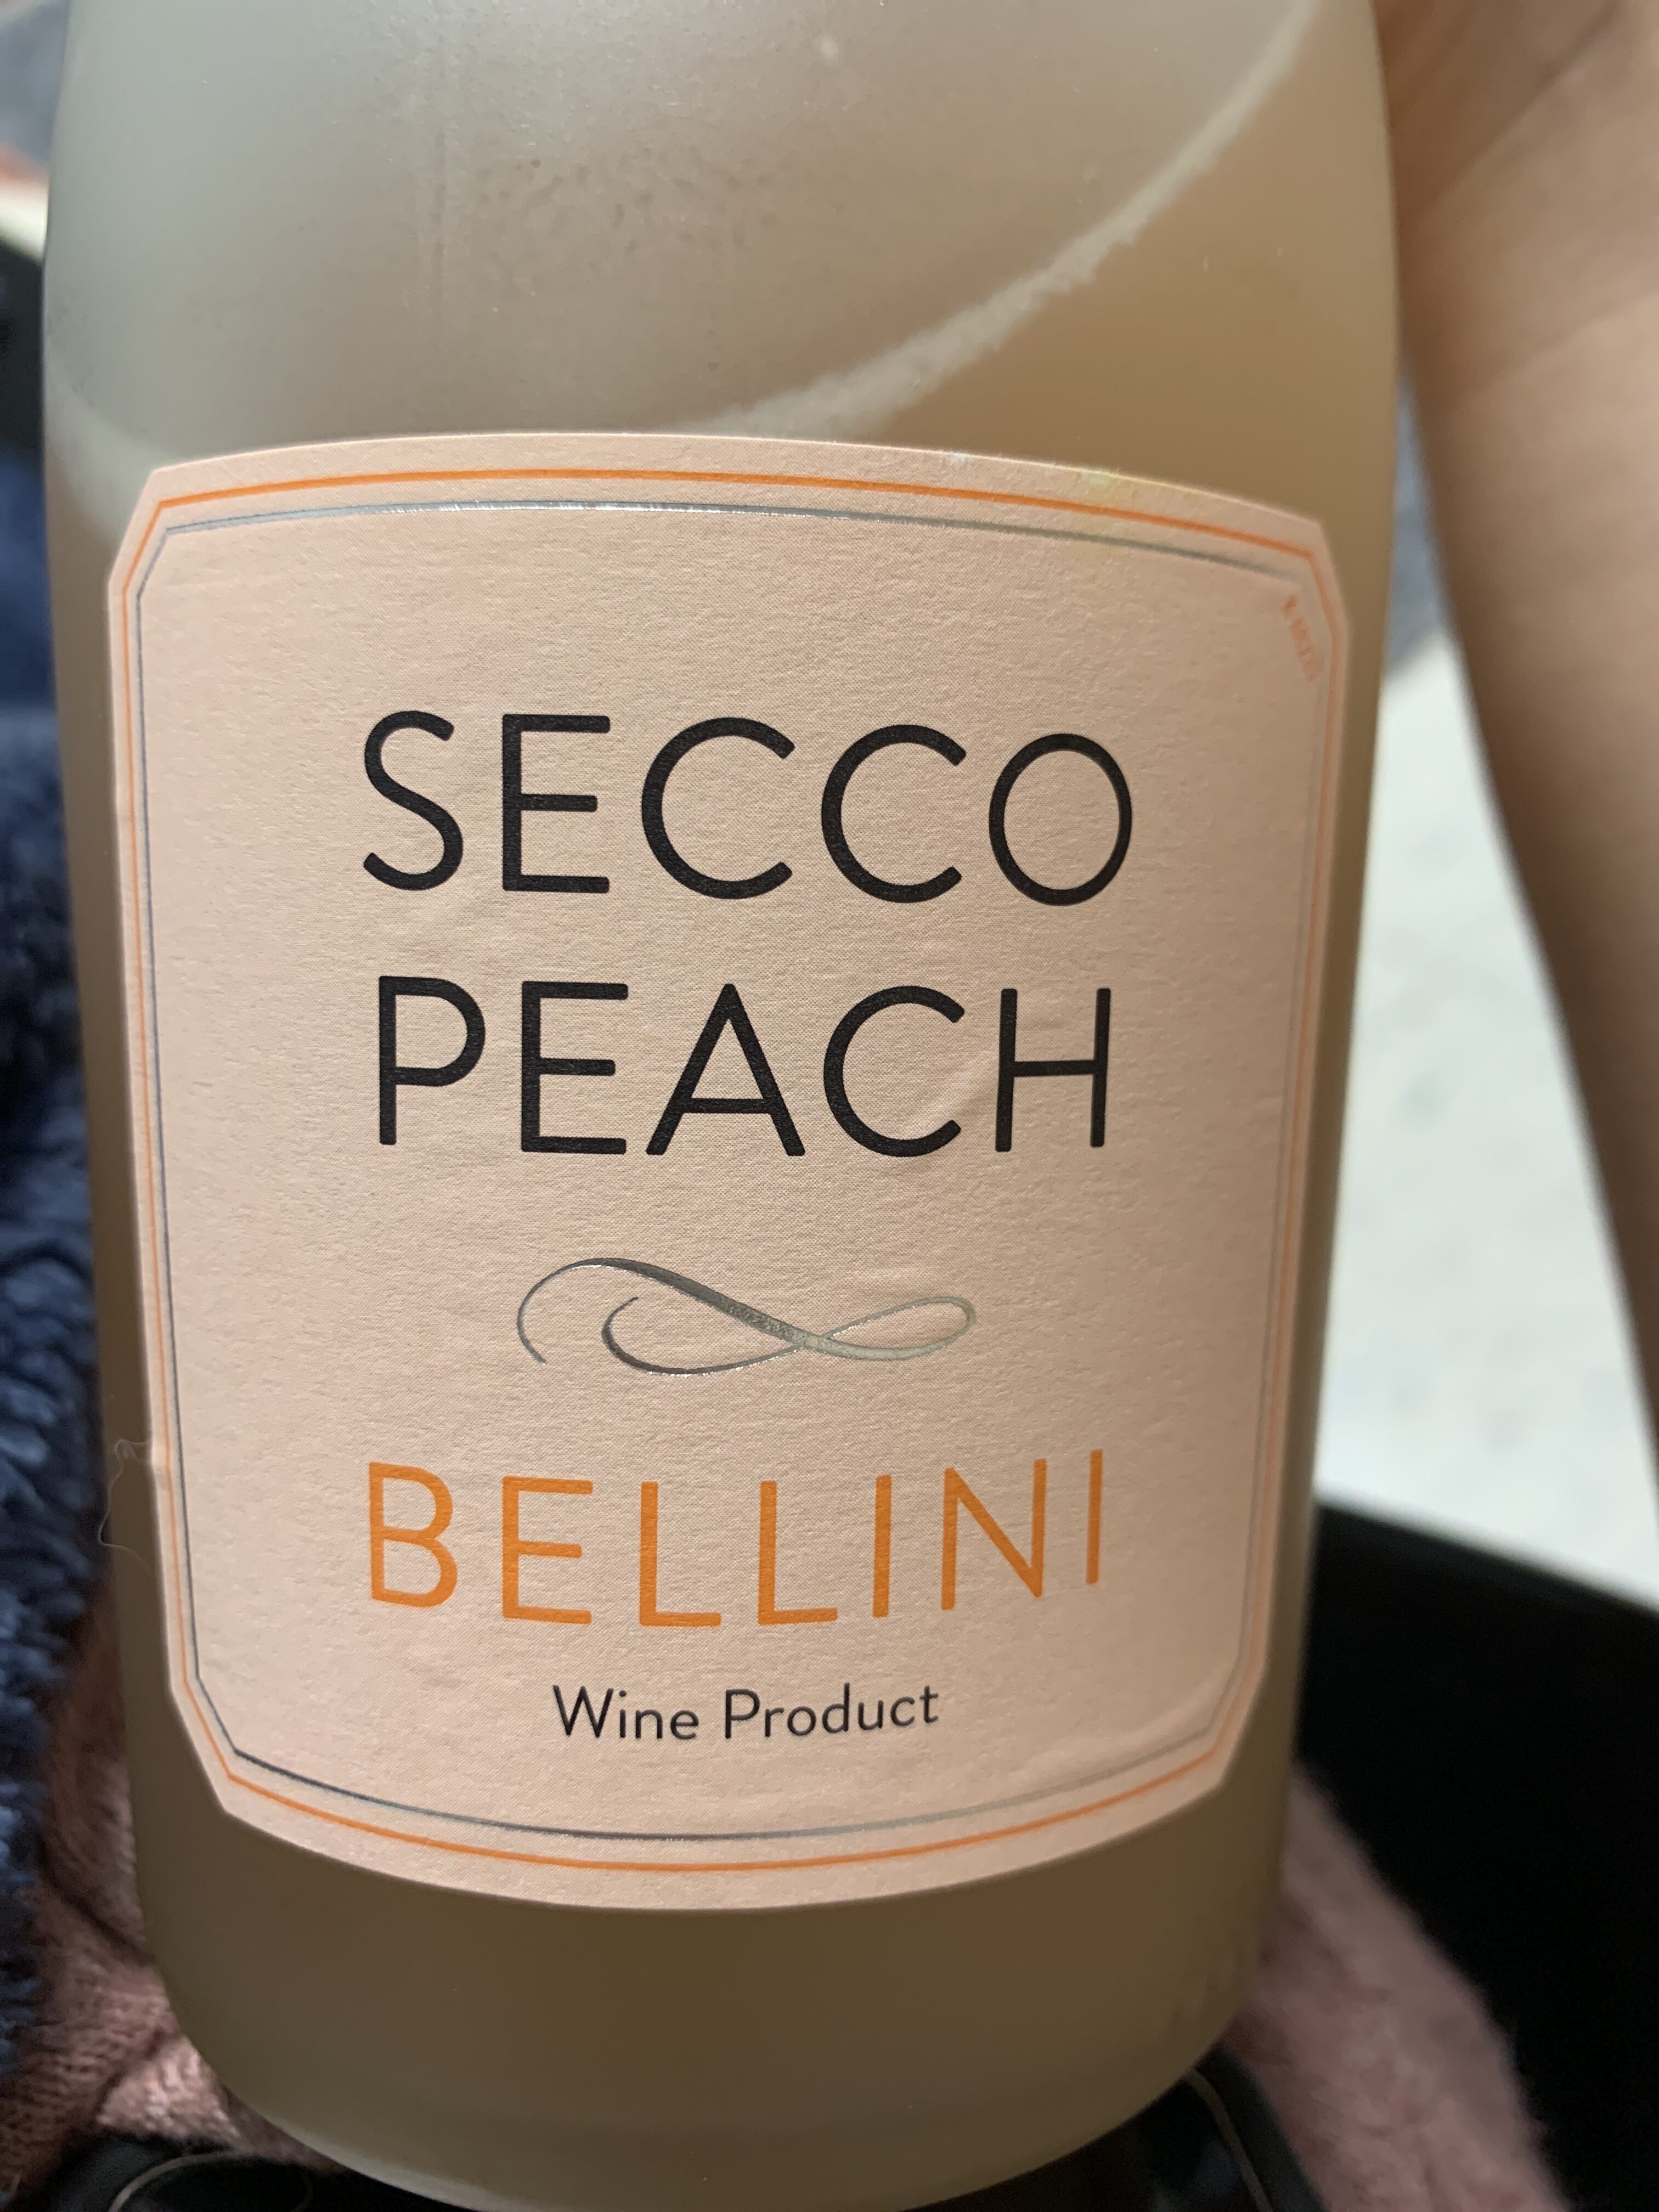 Where Can I Buy Secco Peach Bellini? 